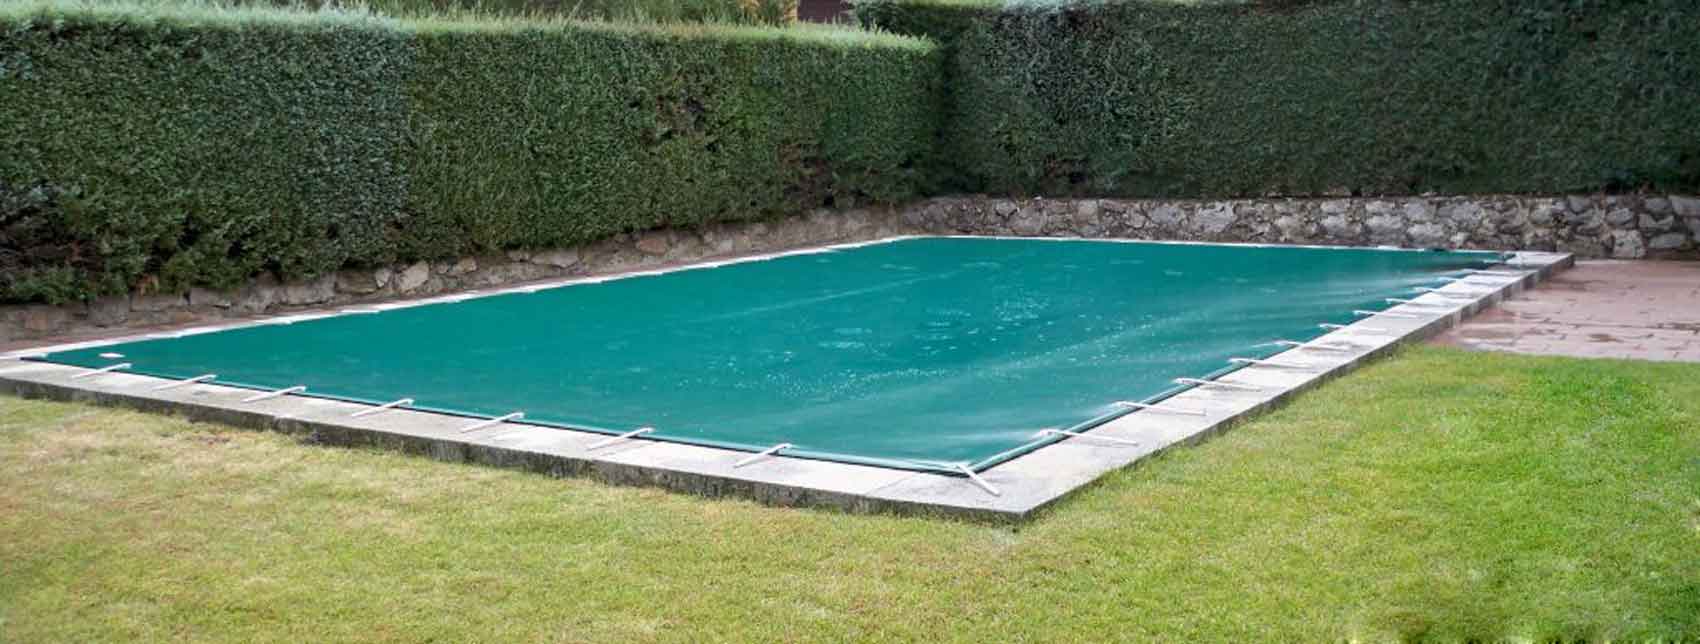 Couverture de piscine d'hiver de qualité supérieure verte